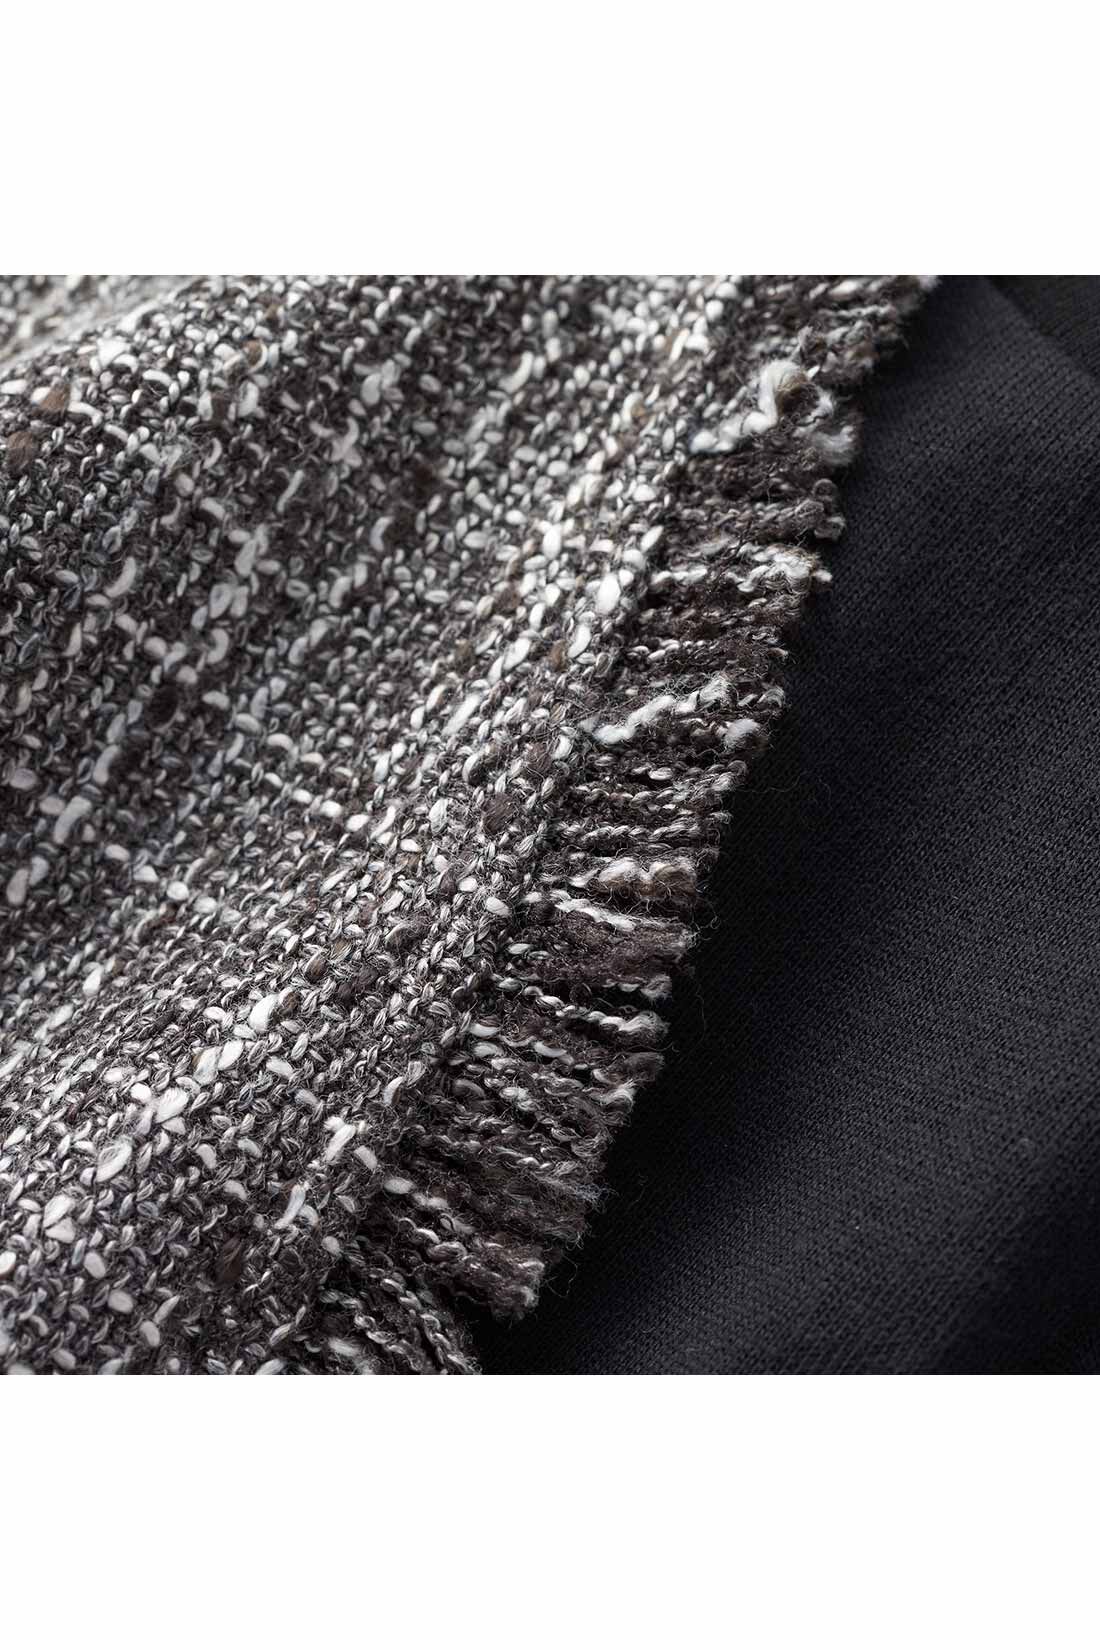 IEDIT[イディット]　こなれコーデがかなう ツイードベストと長袖ロゴTシャツのセット〈ブラック〉|数種の糸で表情豊かに織り上げたツイード素材。ネックやアームホールまわりのフリンジがこなれた印象に。